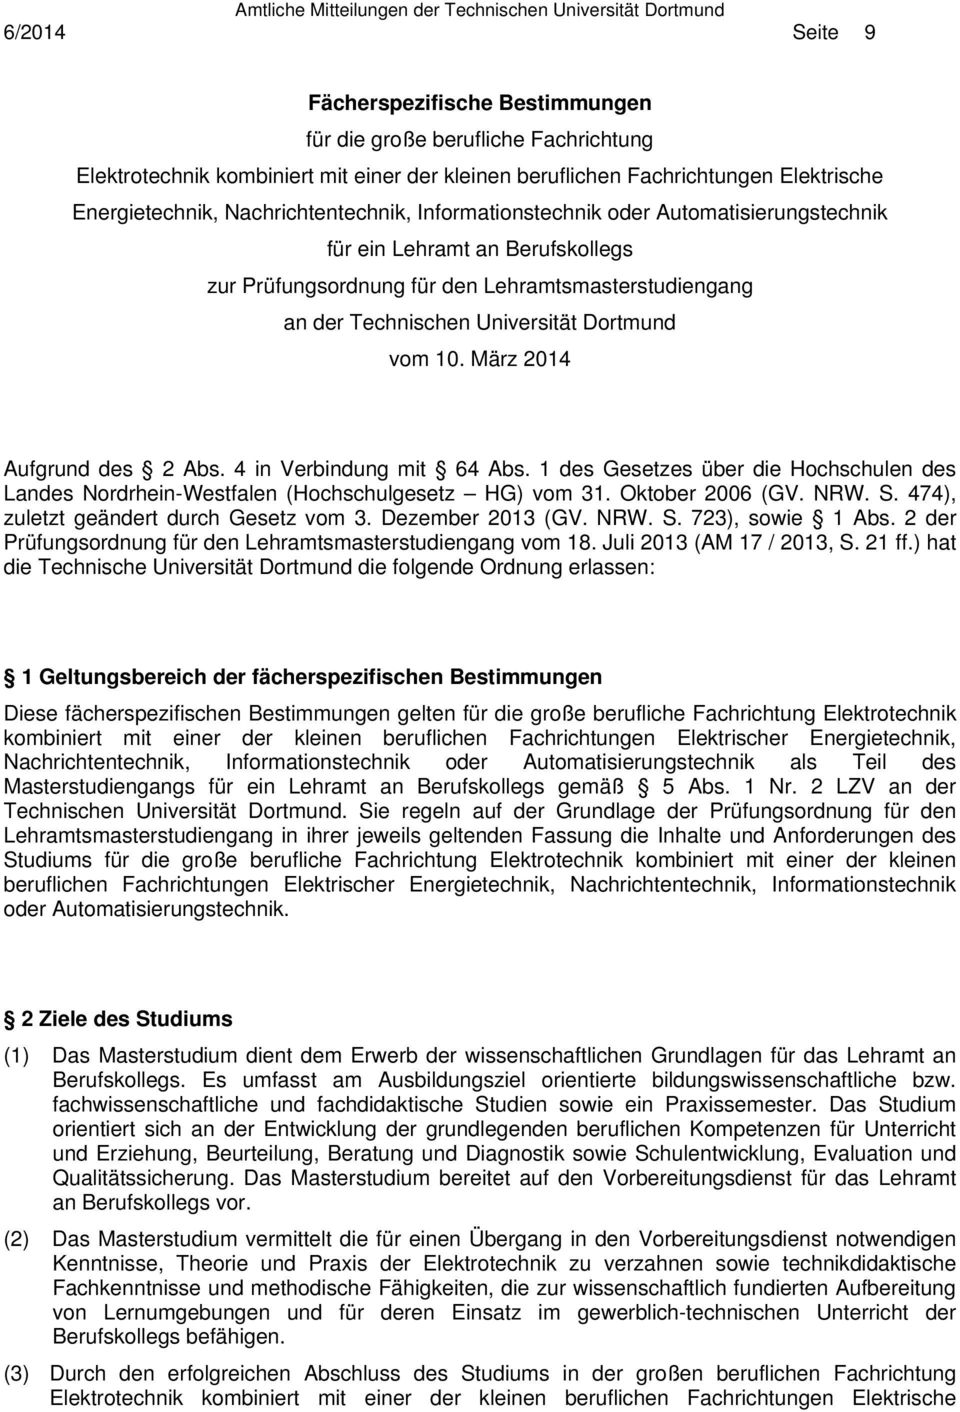 10. März 2014 Aufgrund des 2 Abs. 4 in Verbindung mit 64 Abs. 1 des Gesetzes über die Hochschulen des Landes Nordrhein-Westfalen (Hochschulgesetz HG) vom 31. Oktober 2006 (GV. NRW. S.